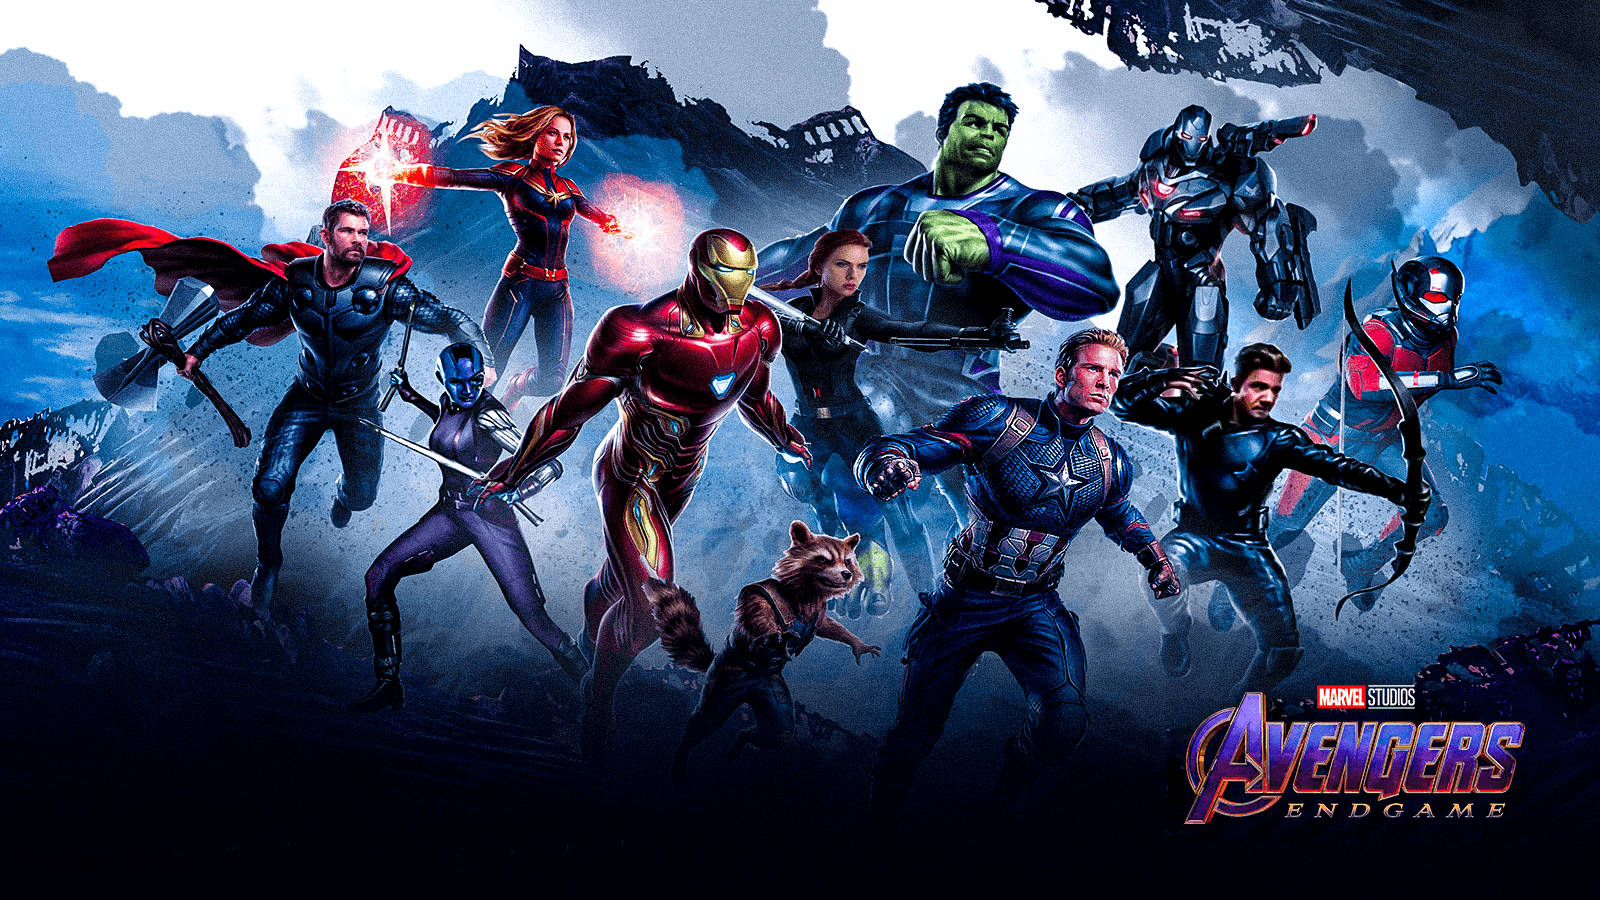 Bildrusa Genom Det Digitala Universumet I Det Fantastiska Avengers Ps4-spelet. Wallpaper